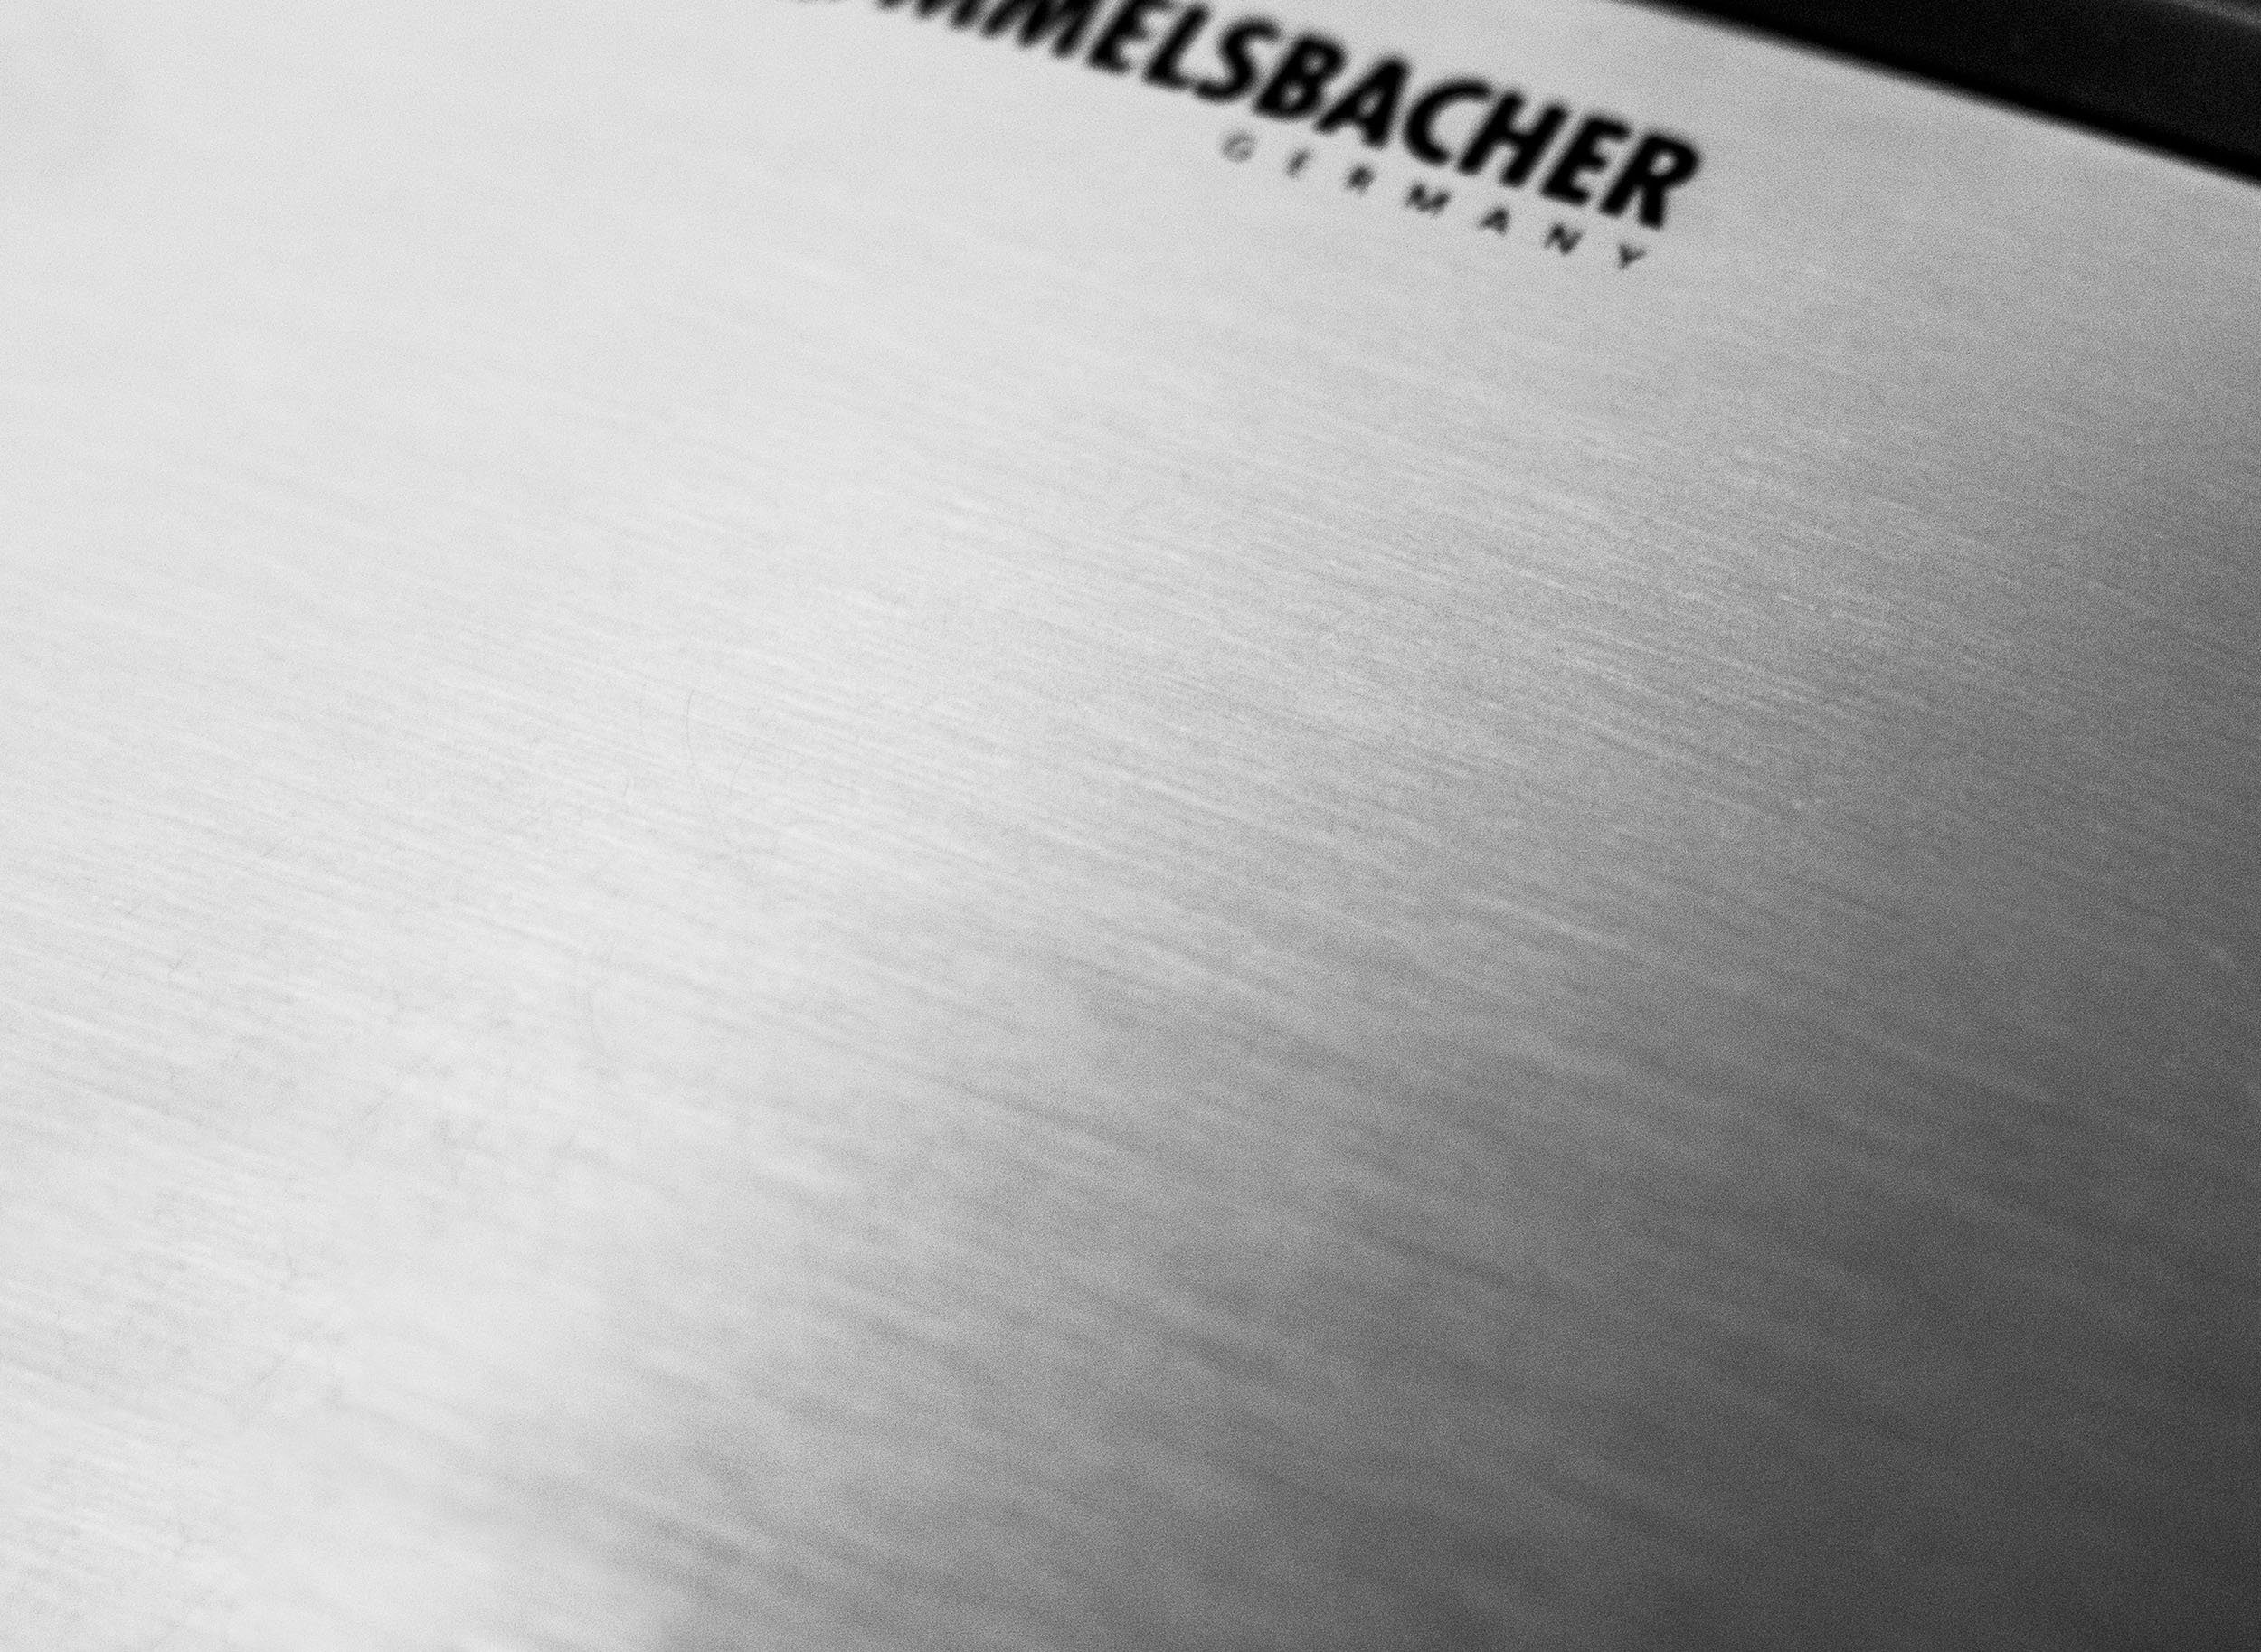 Rommelsbacher W for 4", ST 1410 "Fun 1400 Sandwichmaker